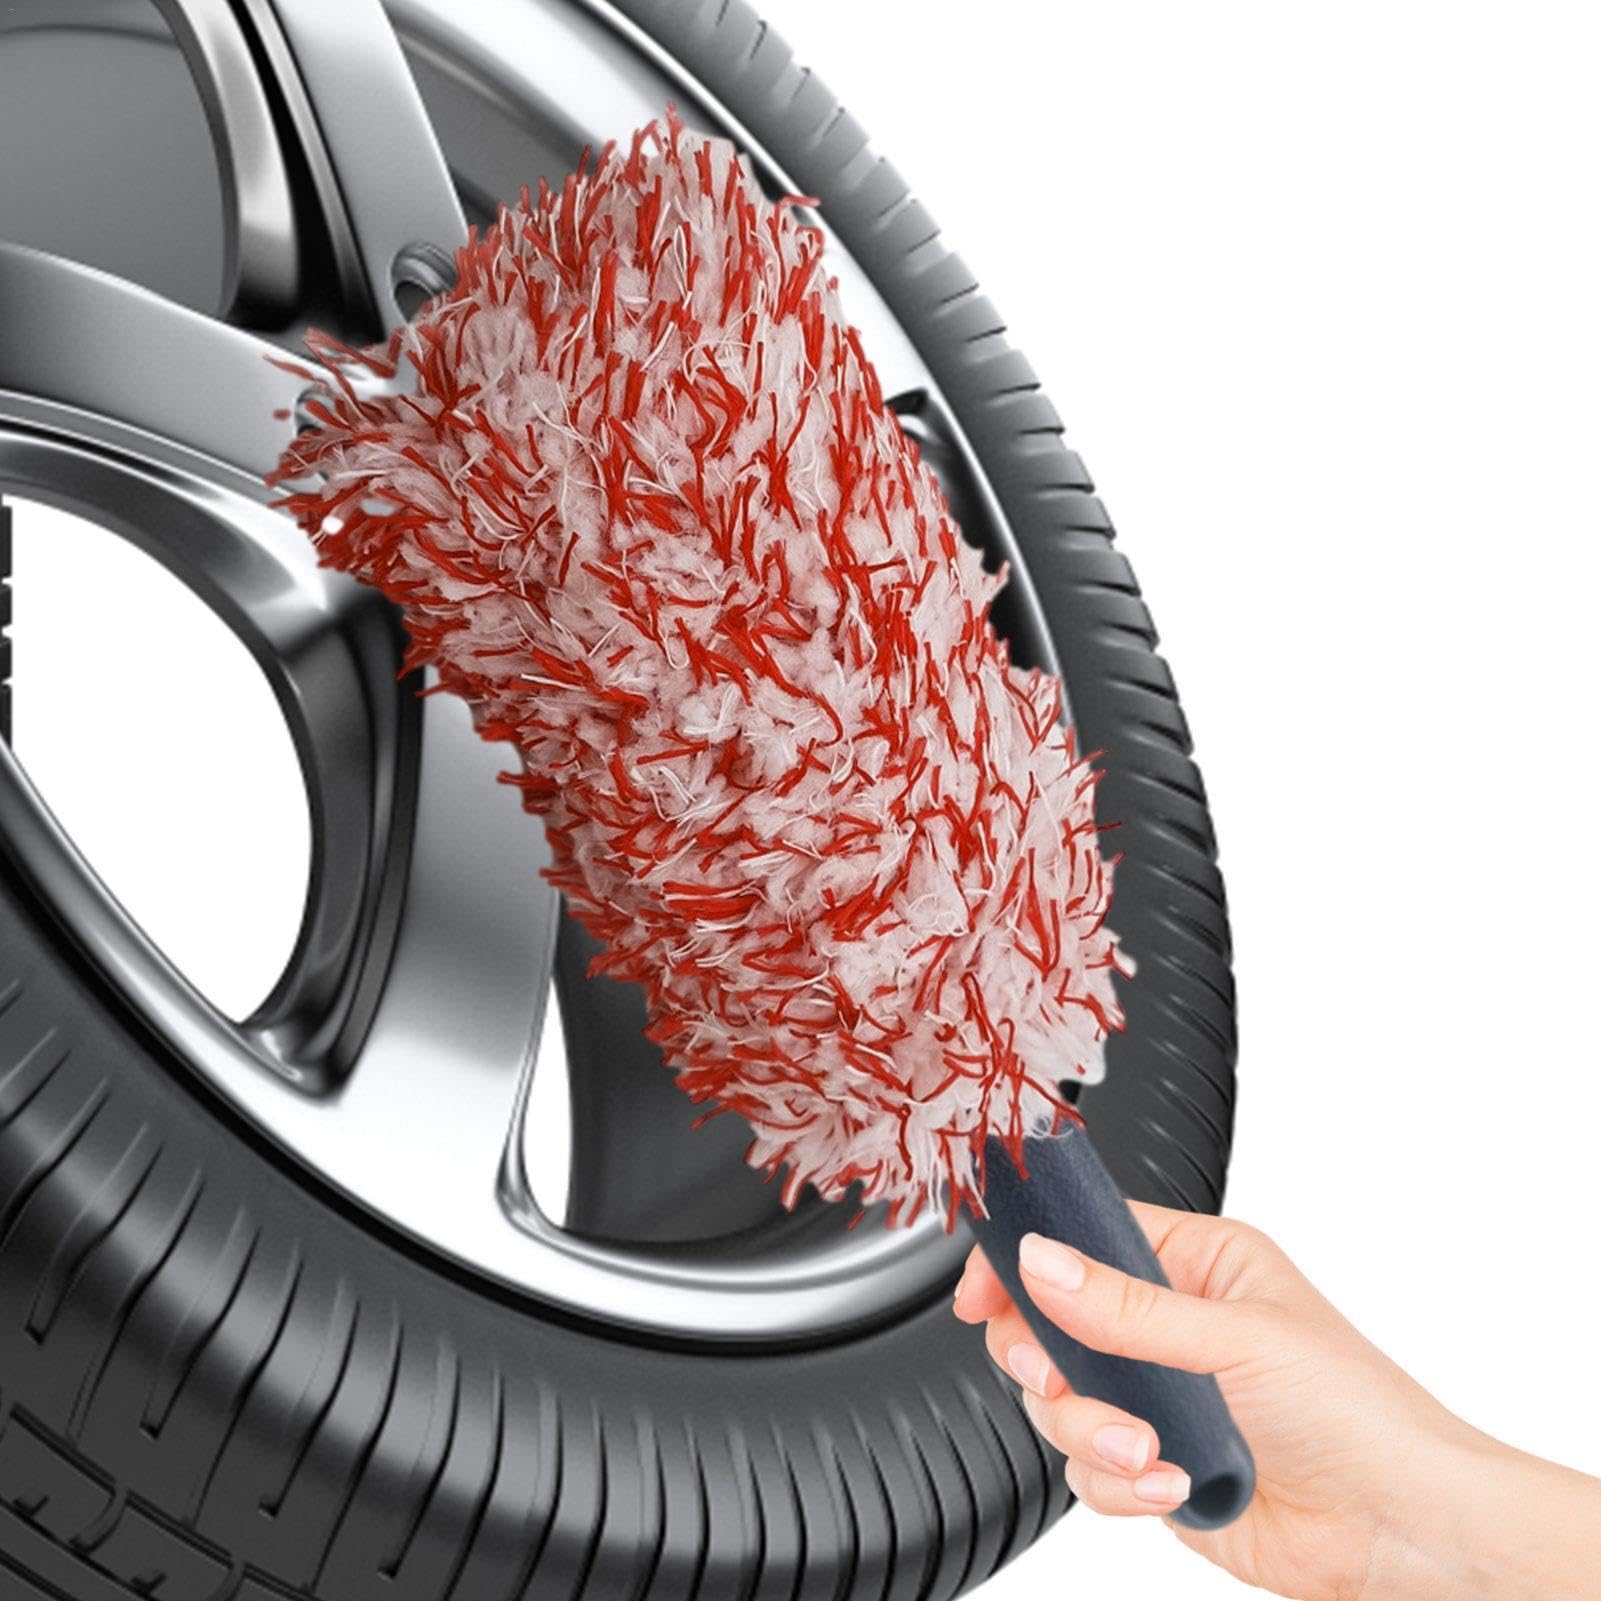 Befeixue Autowasch-Reifenbürste, Reifenwaschbürste - Weiche Felgenbürste für die Reifenpflege - Reifenreinigungswerkzeug, Mehrzweckbürste für Fahrzeuge, SUVs, Autos, LKWs, Minivans, Heimmotorräder von Befeixue